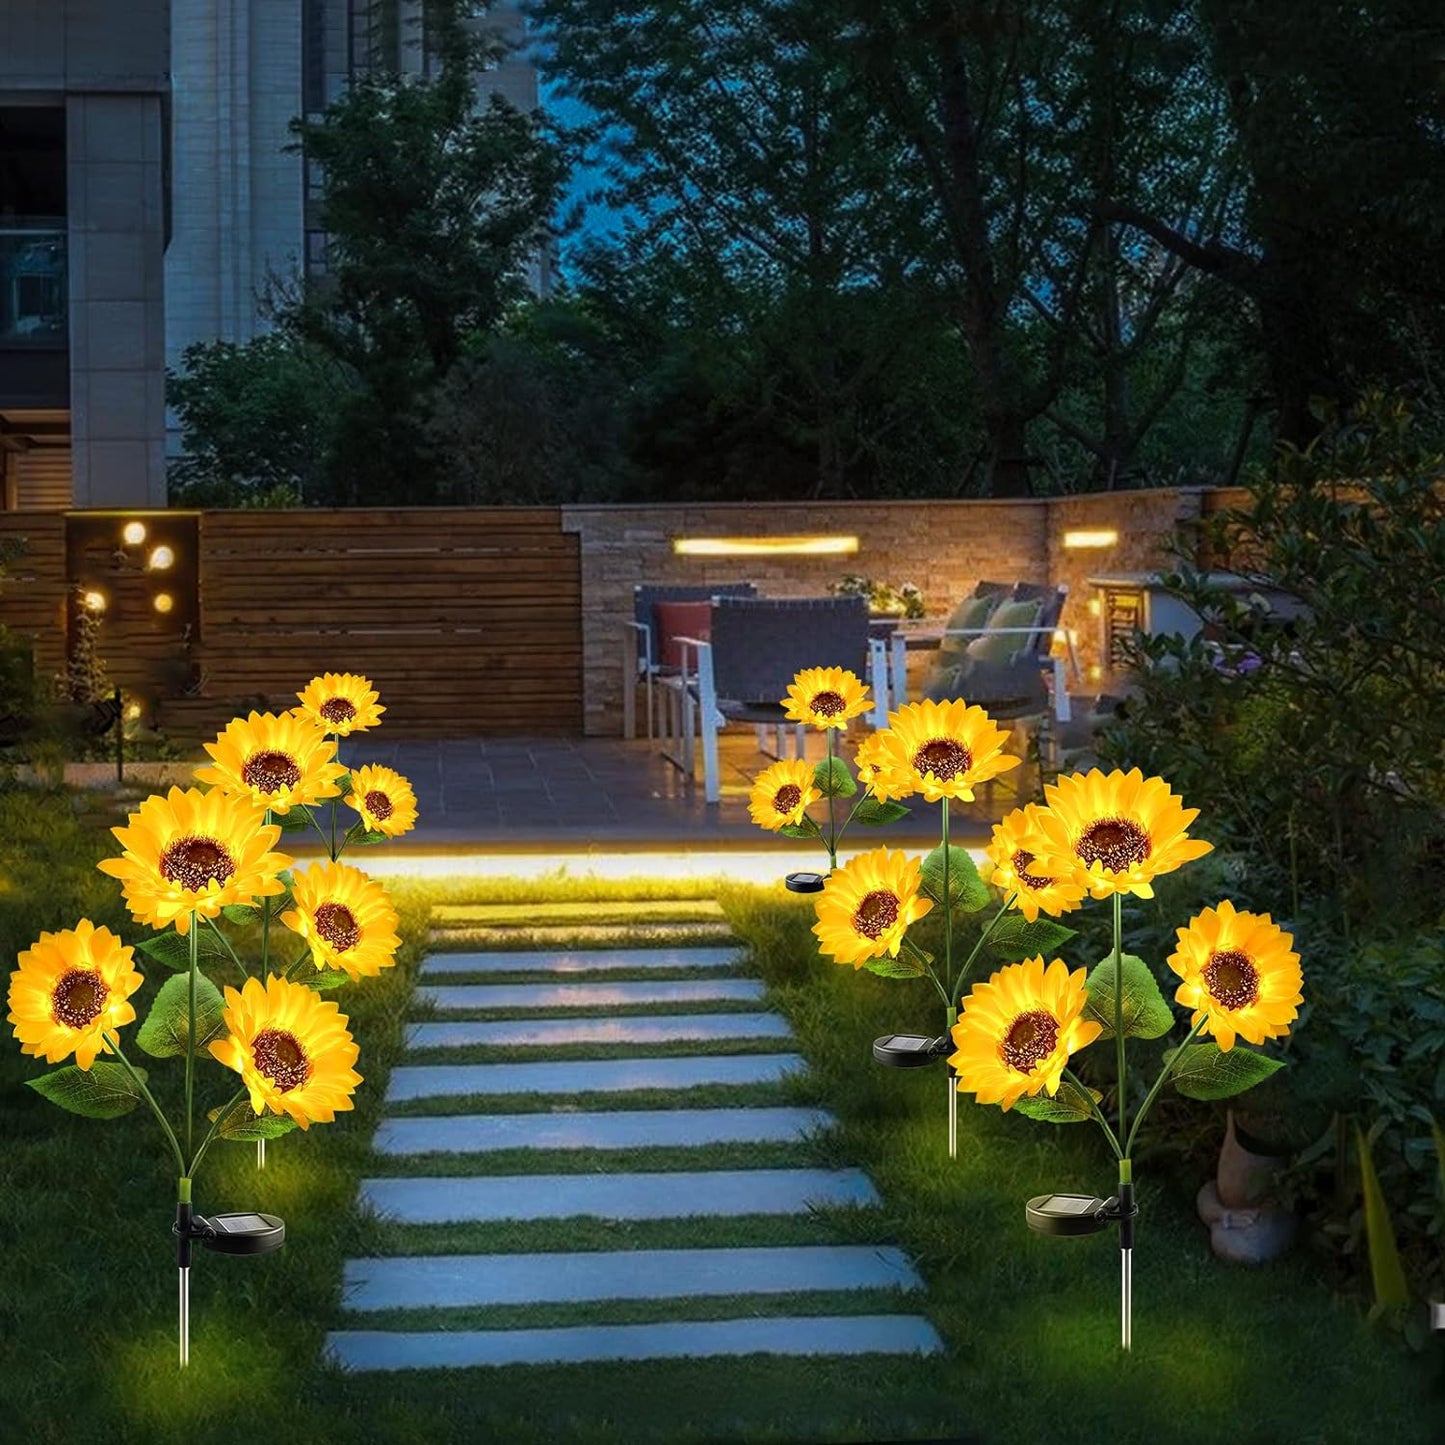 Garden Sunflower Solar Powered Light (Multi Sets)